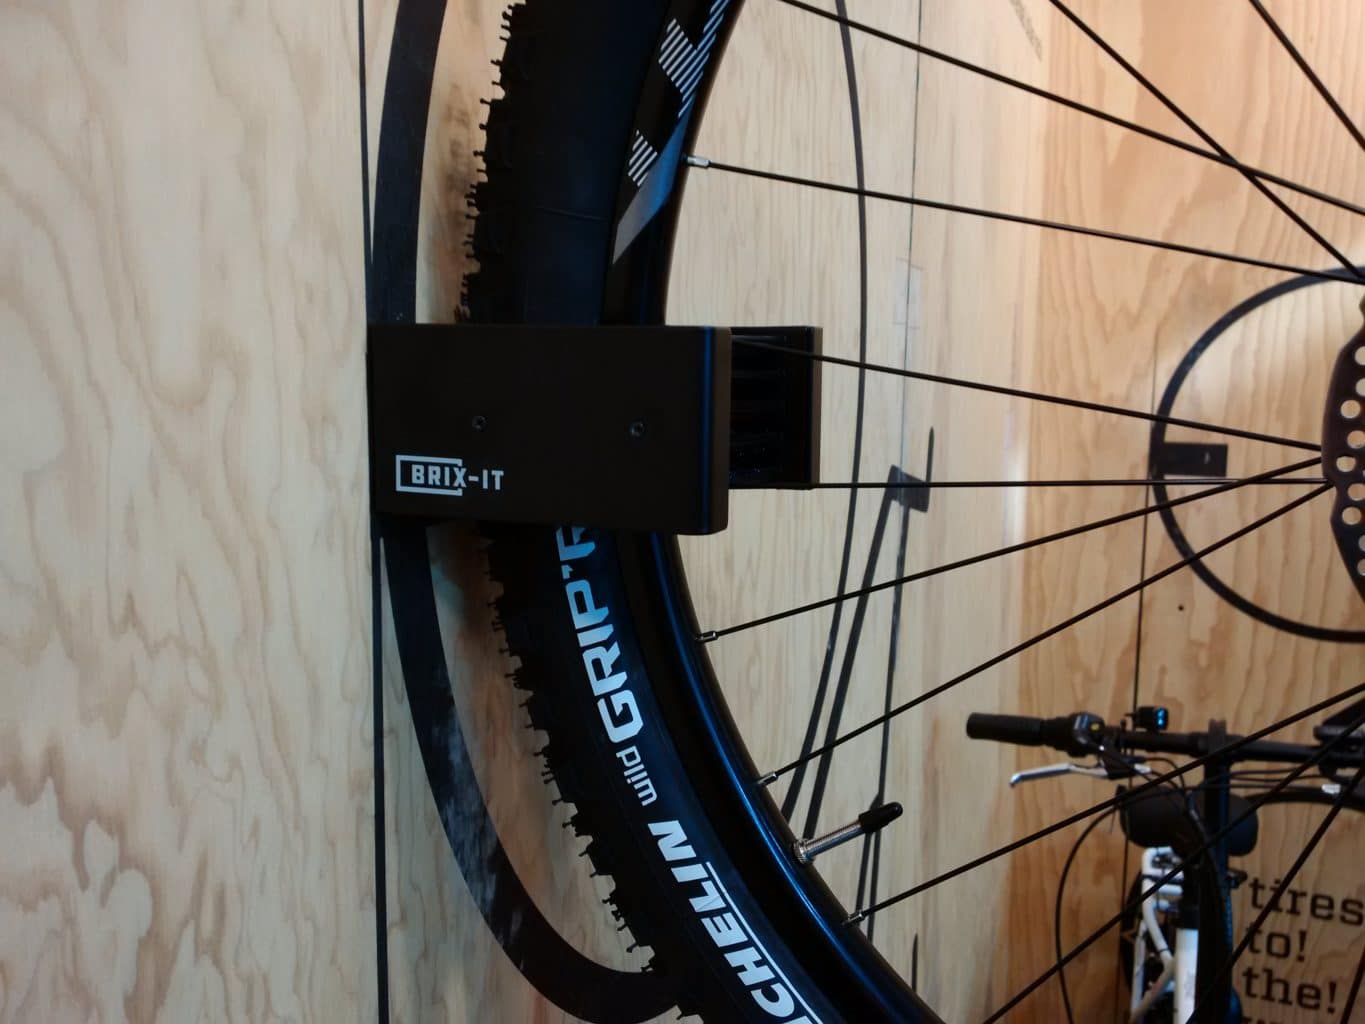 BRIX-IT Fahrrad Wandhalterung für Fahrräder und E Bikes  Fahrradwandhalterung alle Größen Fahrradhalterung Wand für Rennrad MTB  Kinderrad | BRIX-IT